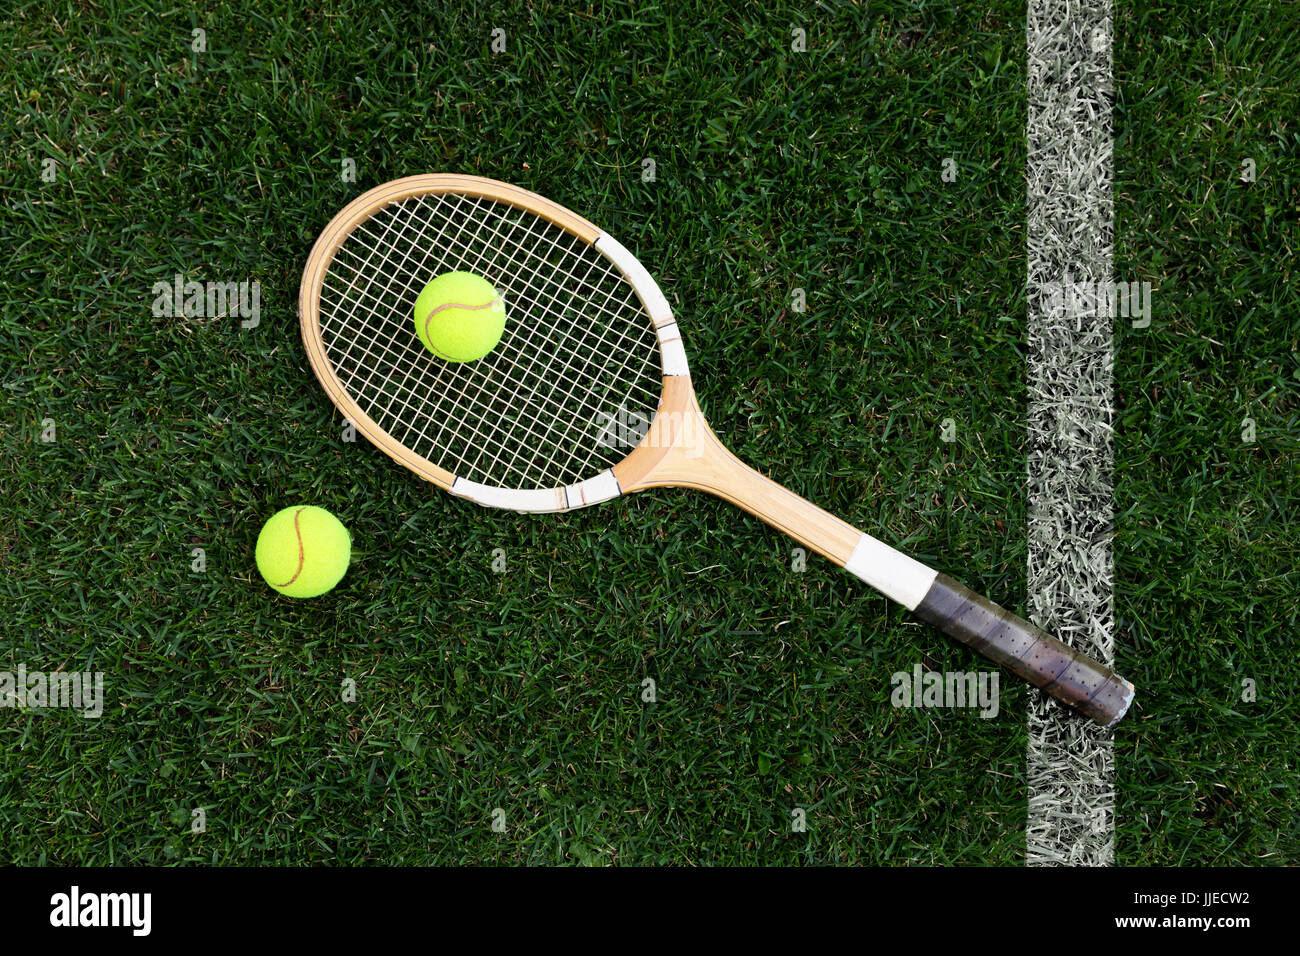 Retrò racchetta da tennis su erba naturale con sfere. vista superiore Foto Stock